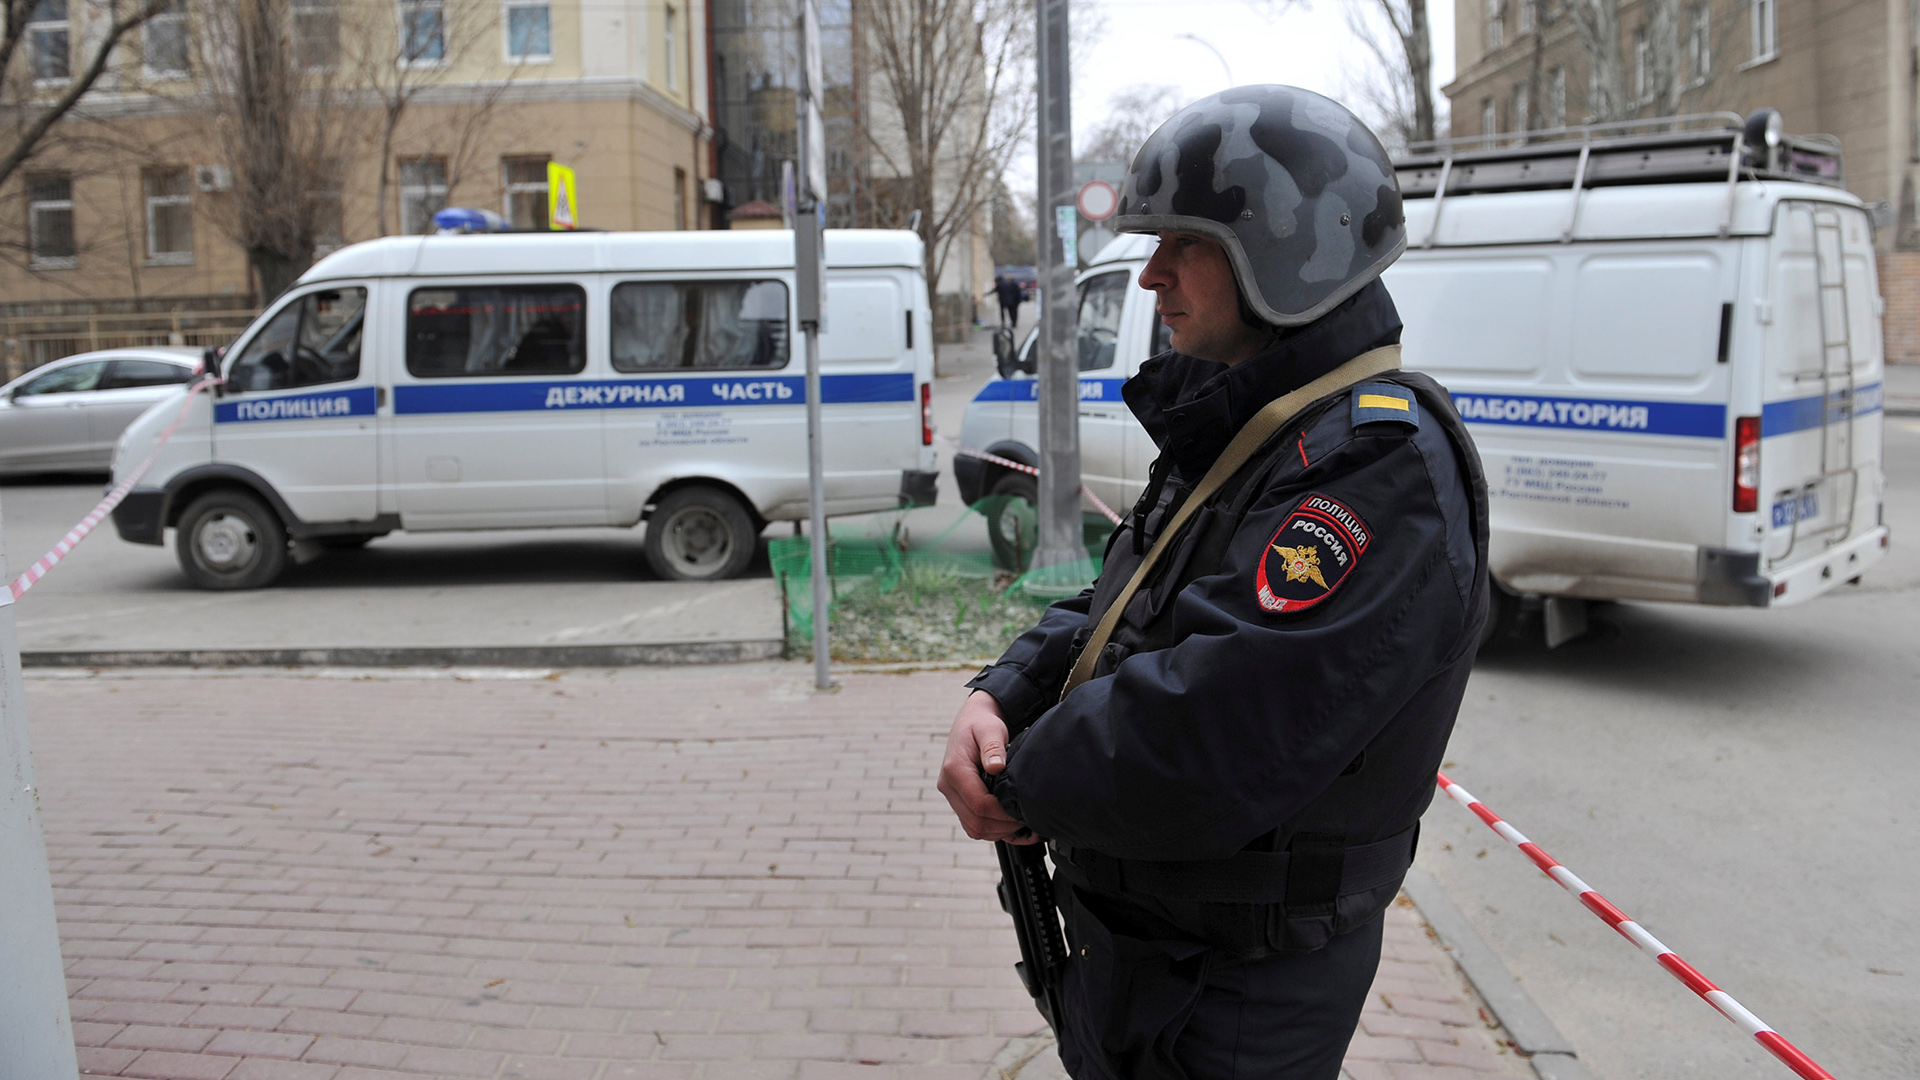 Desactivada una bomba en la casa de los presuntos cómplices del suicida de San Petersburgo